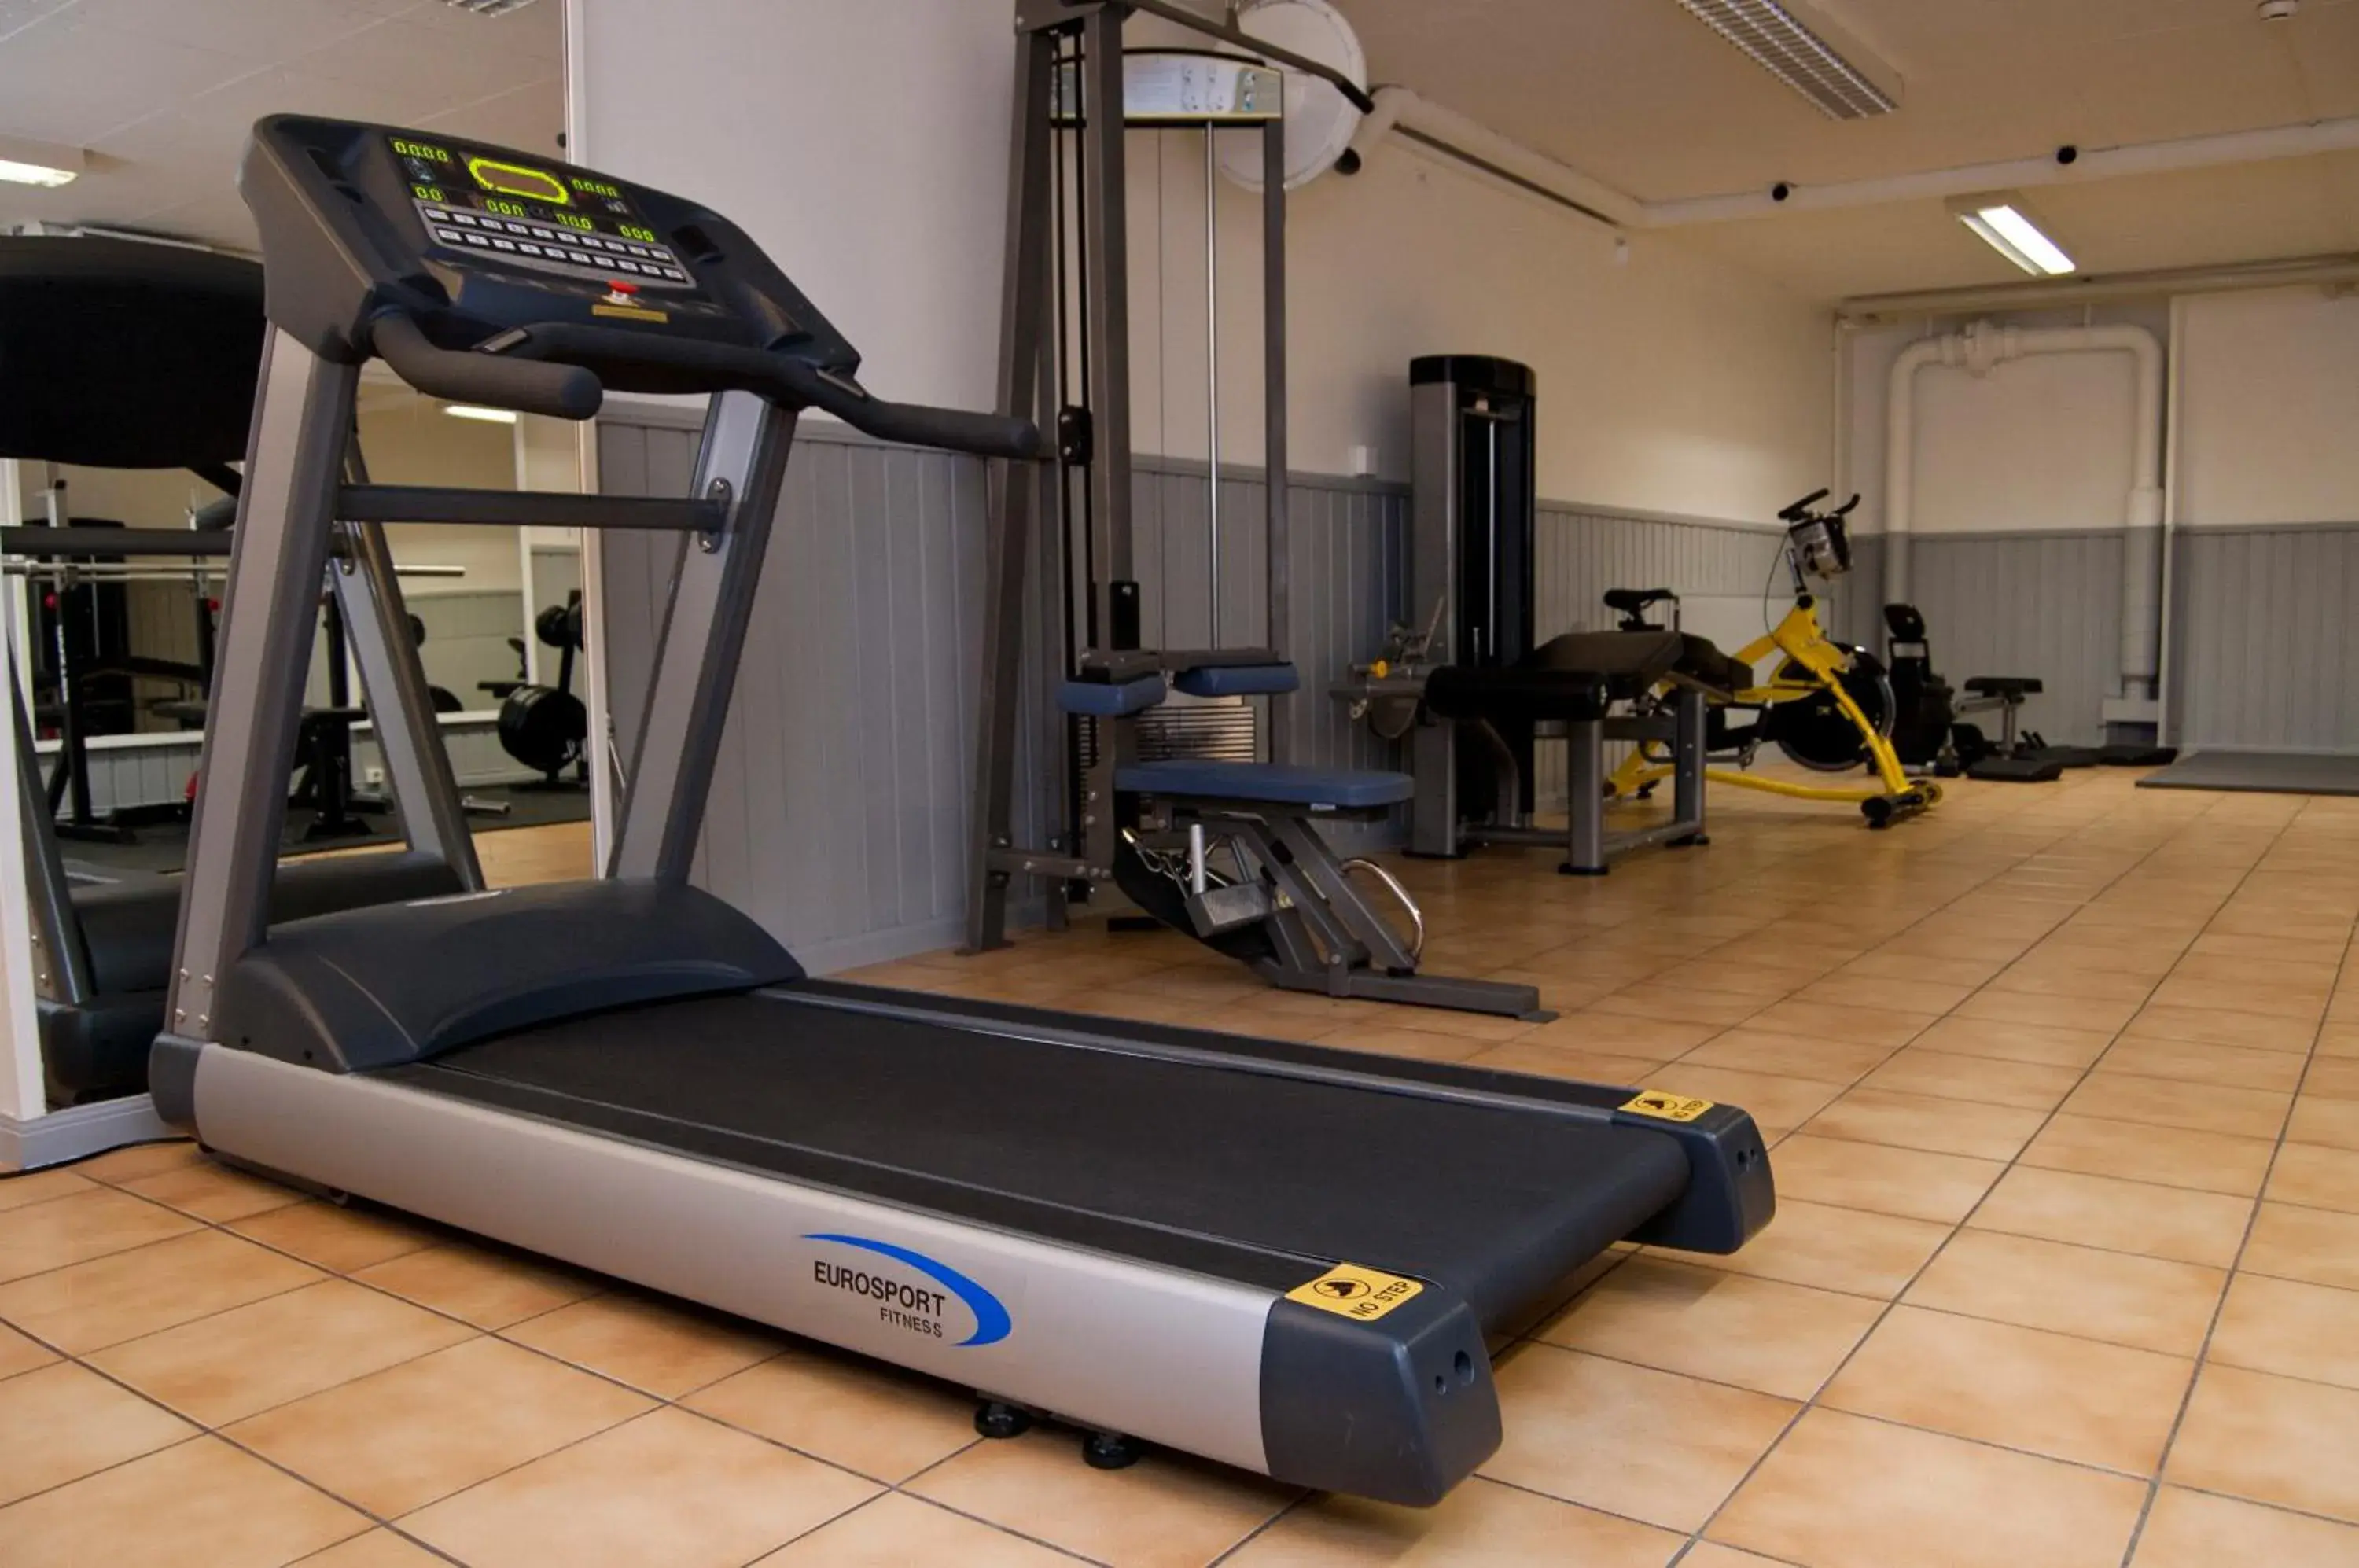 Fitness centre/facilities, Fitness Center/Facilities in Hotell Kung Gösta